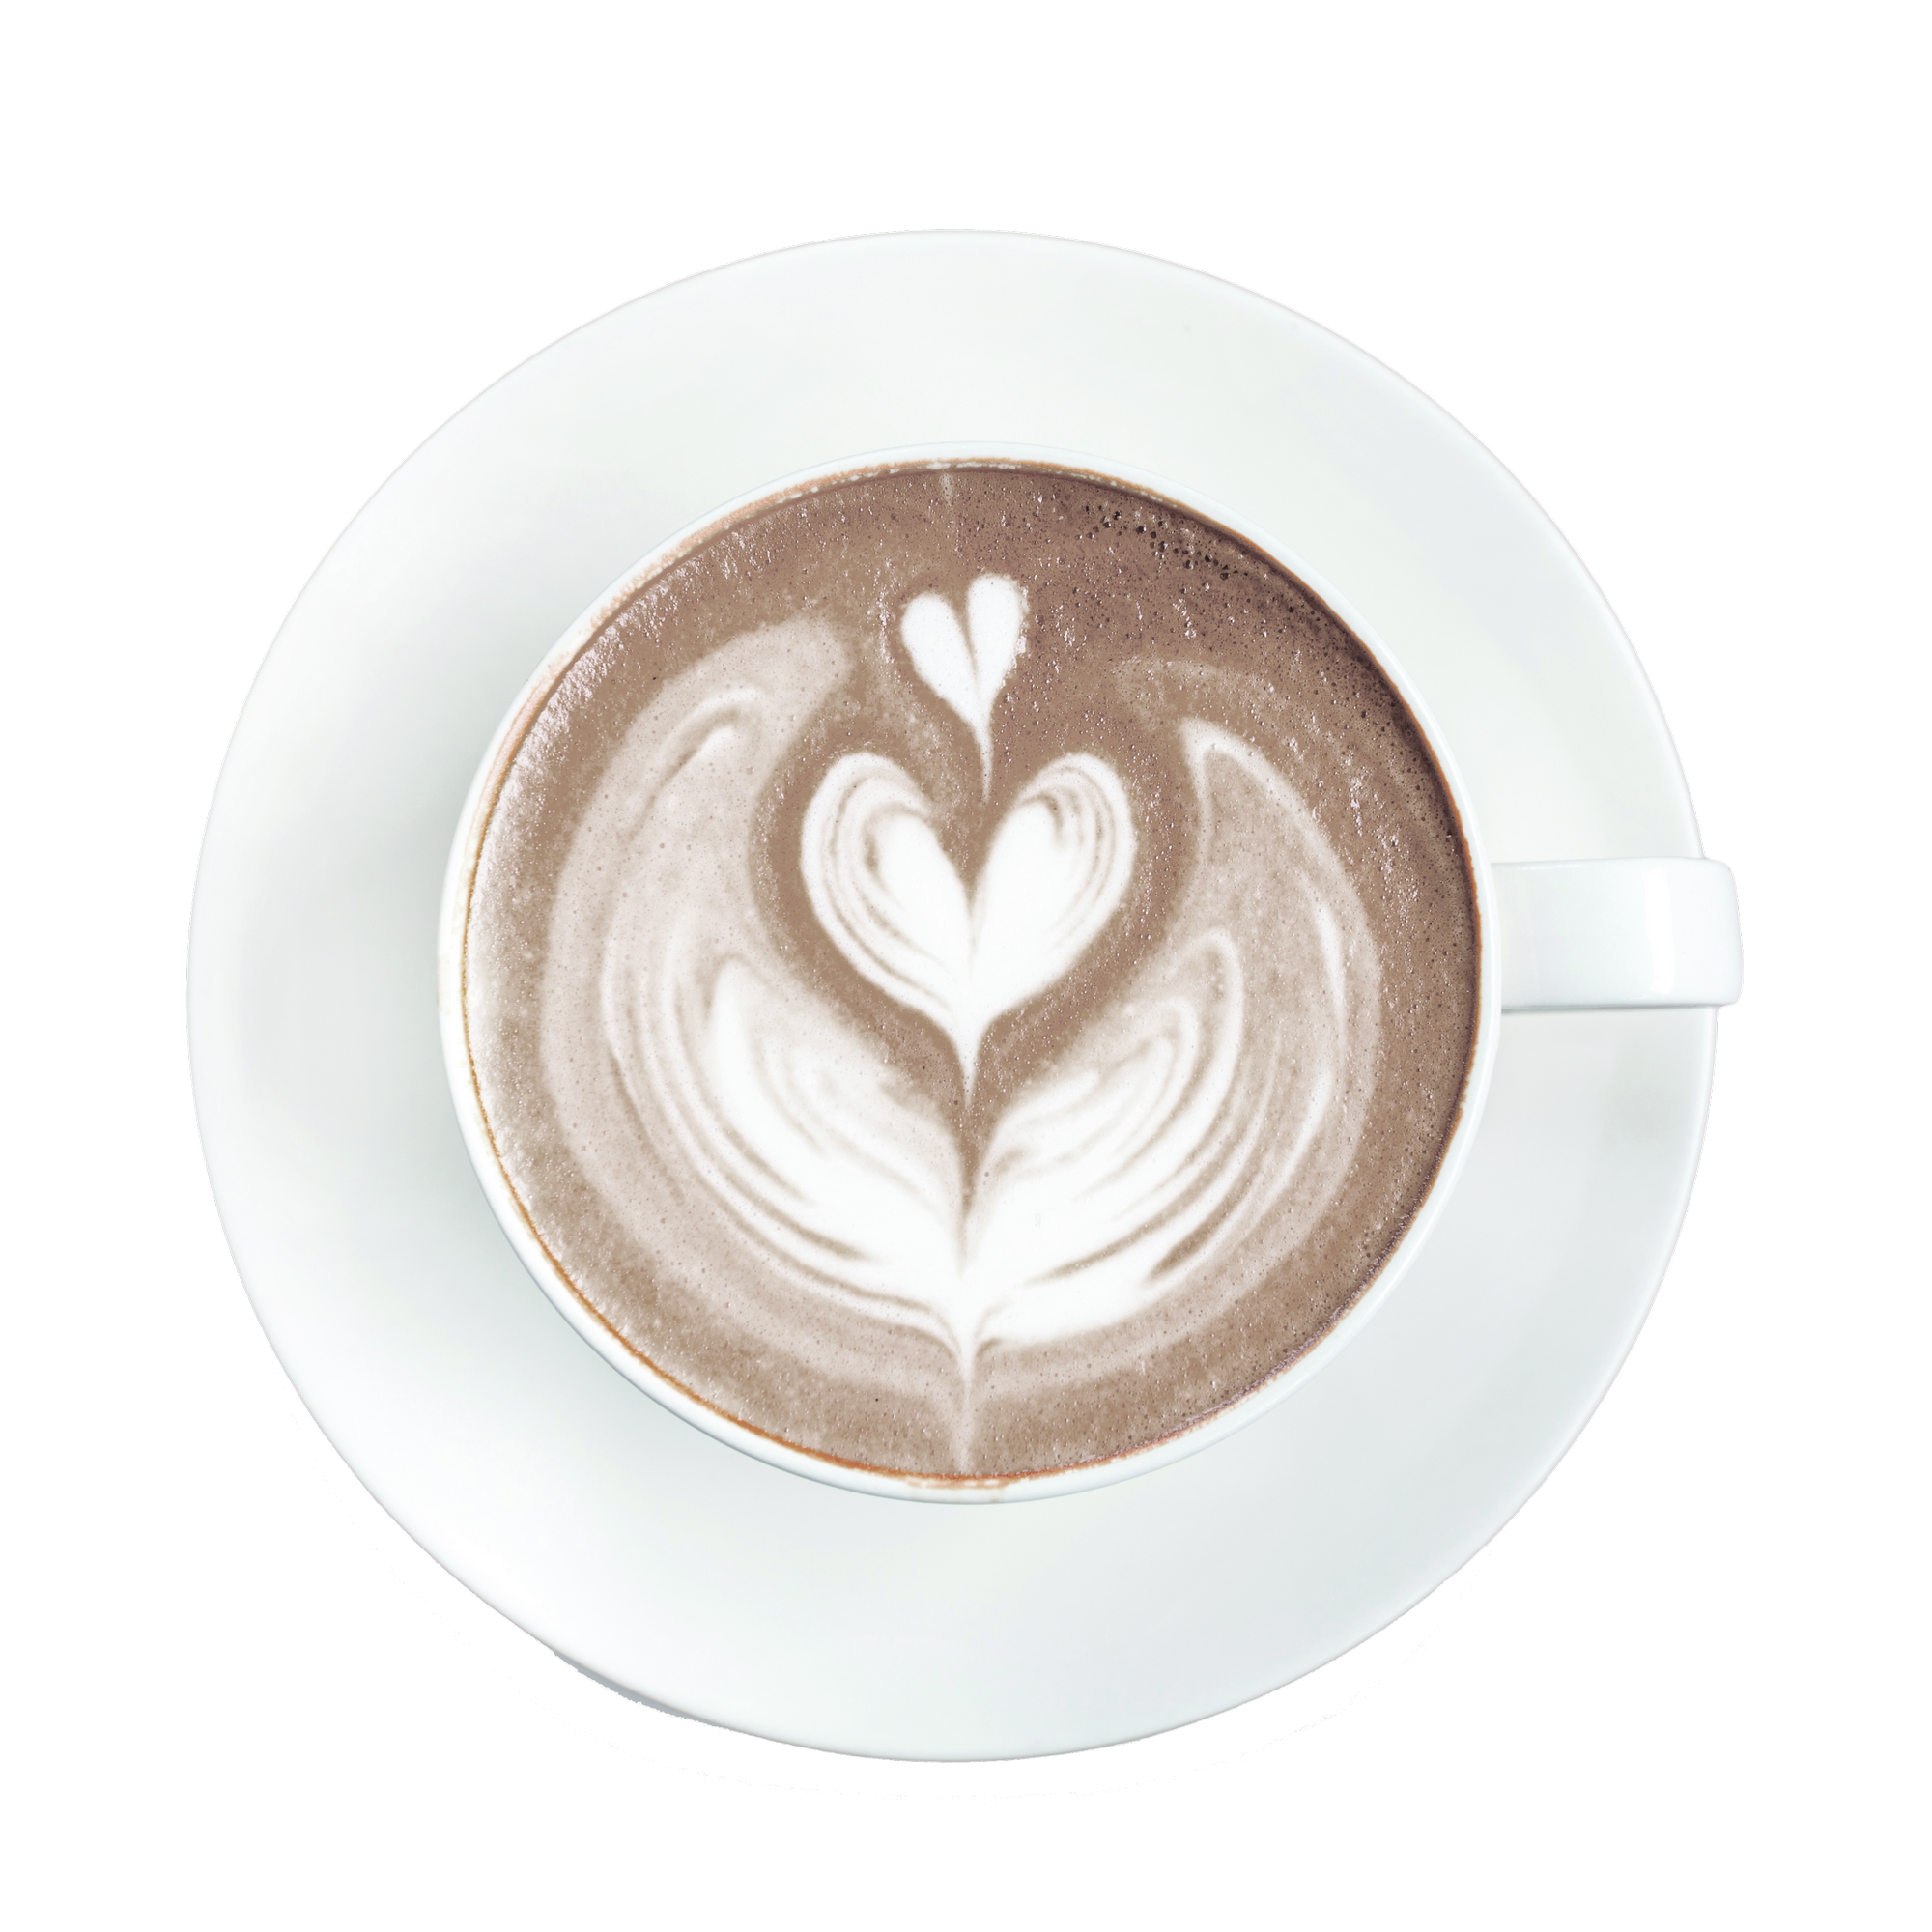 Wandfarbe 'Coffee und Cream' cappuccinofarben matt 2,5 l + product picture